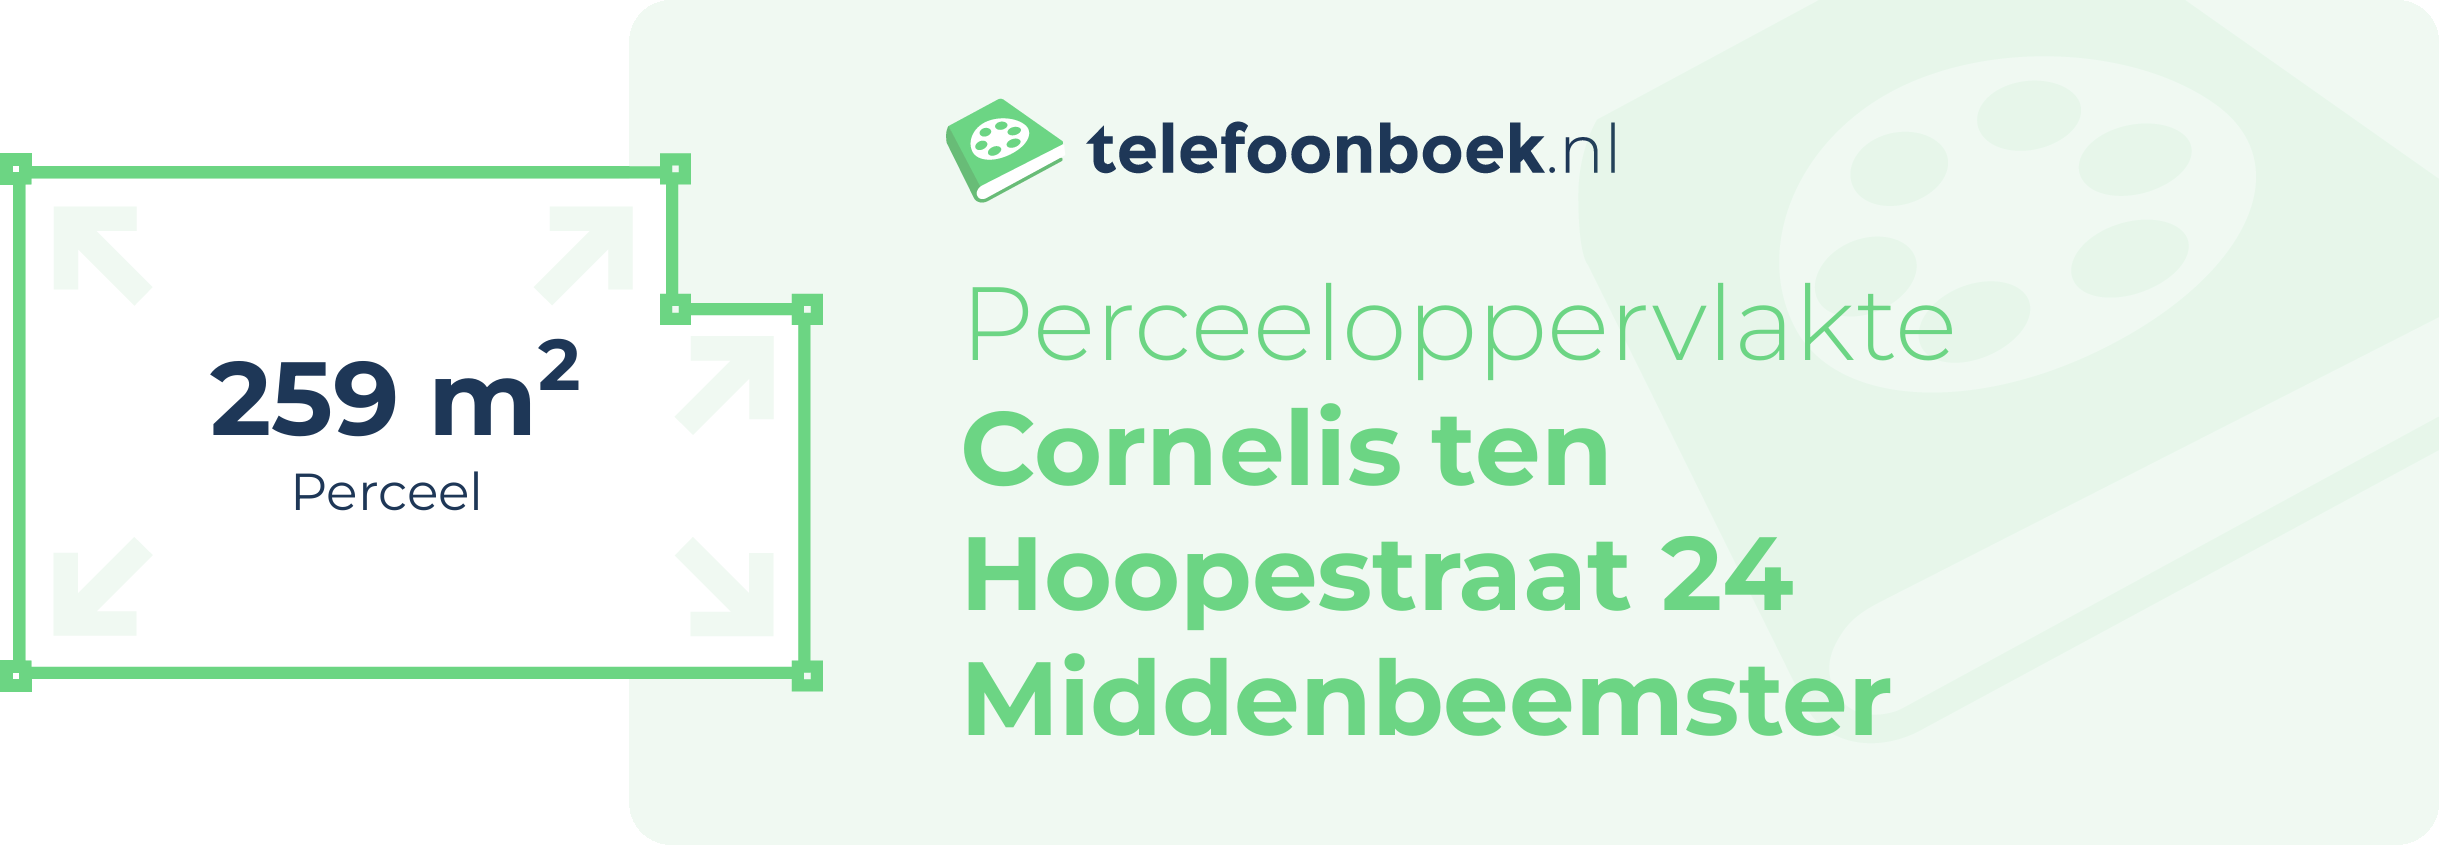 Perceeloppervlakte Cornelis Ten Hoopestraat 24 Middenbeemster